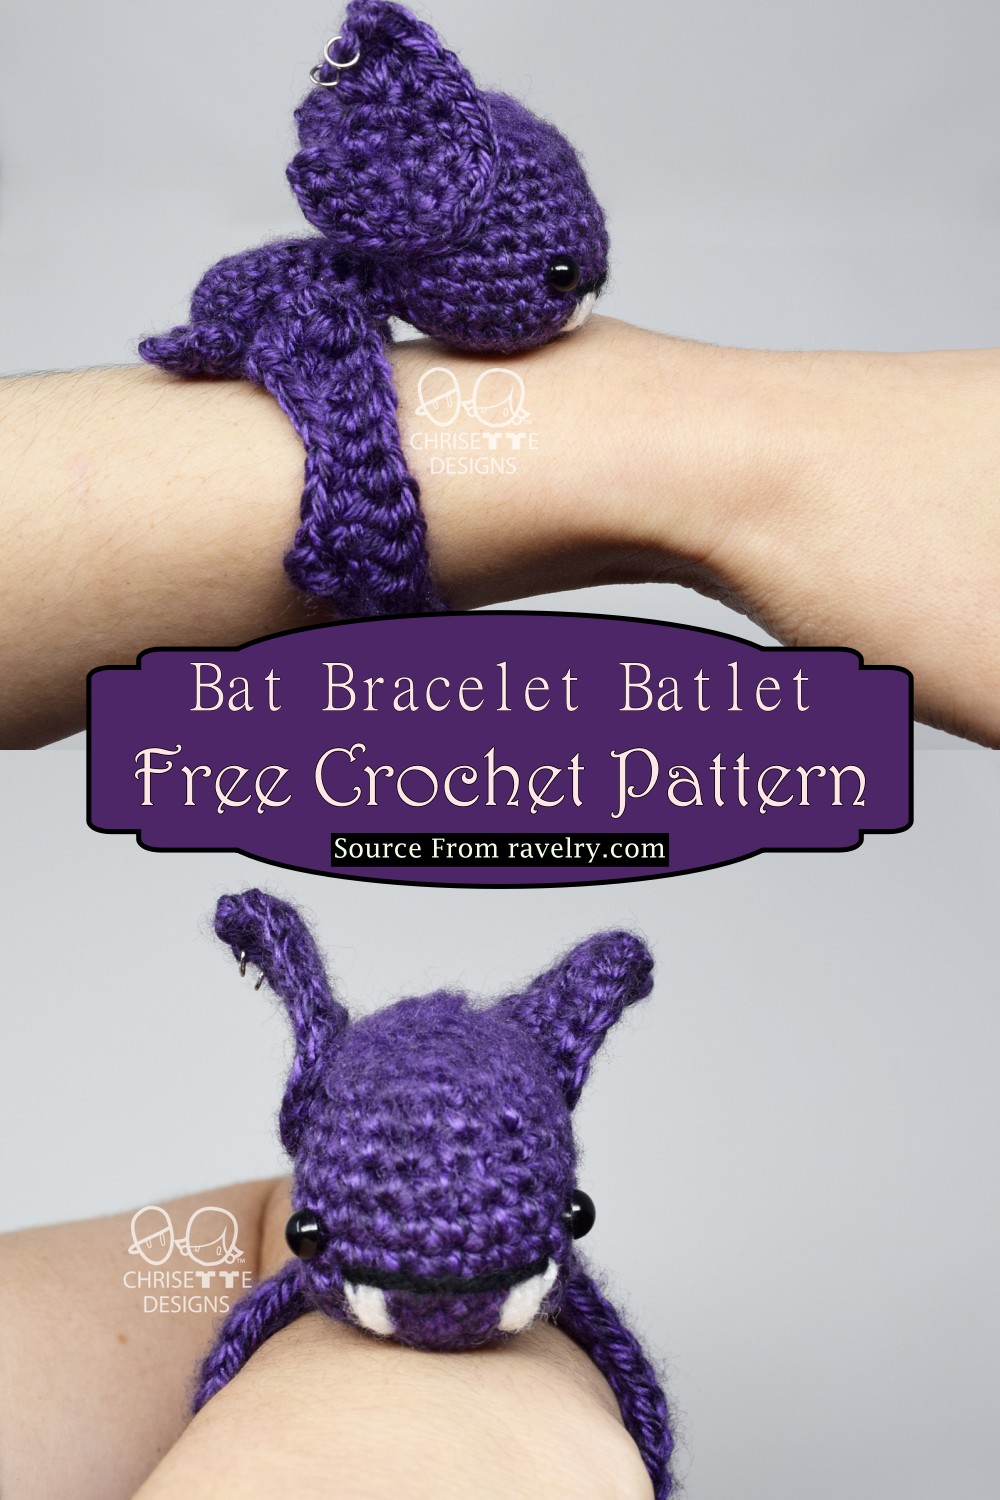 Bat Bracelet Batlet